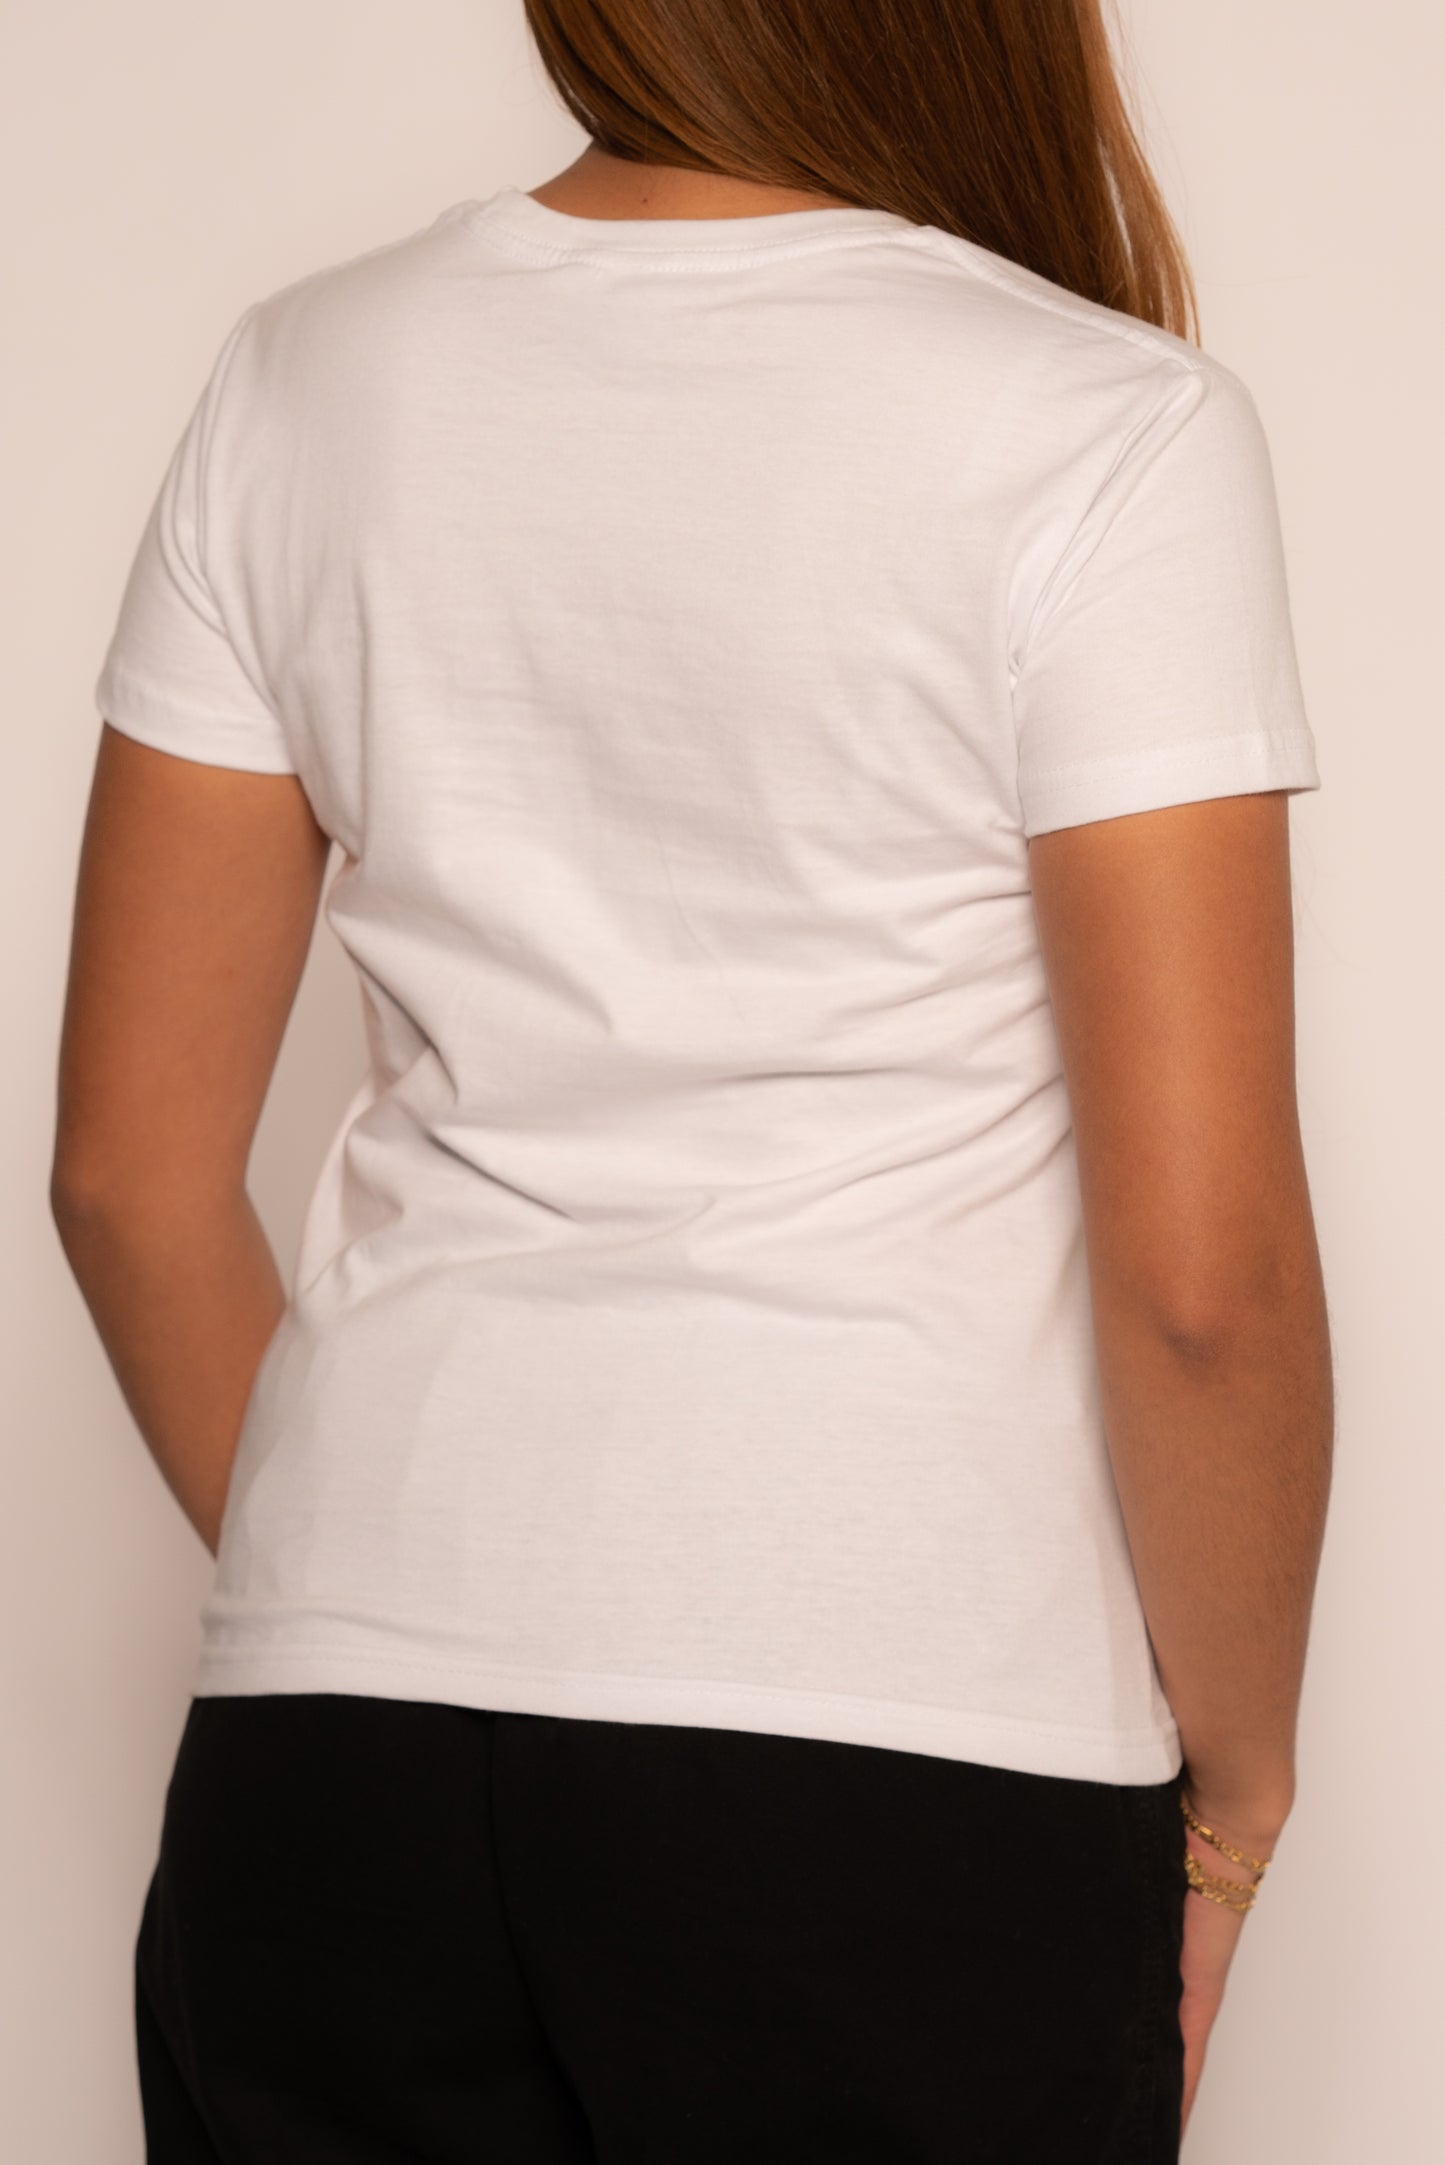 Celia Limited Print Tshirt - White